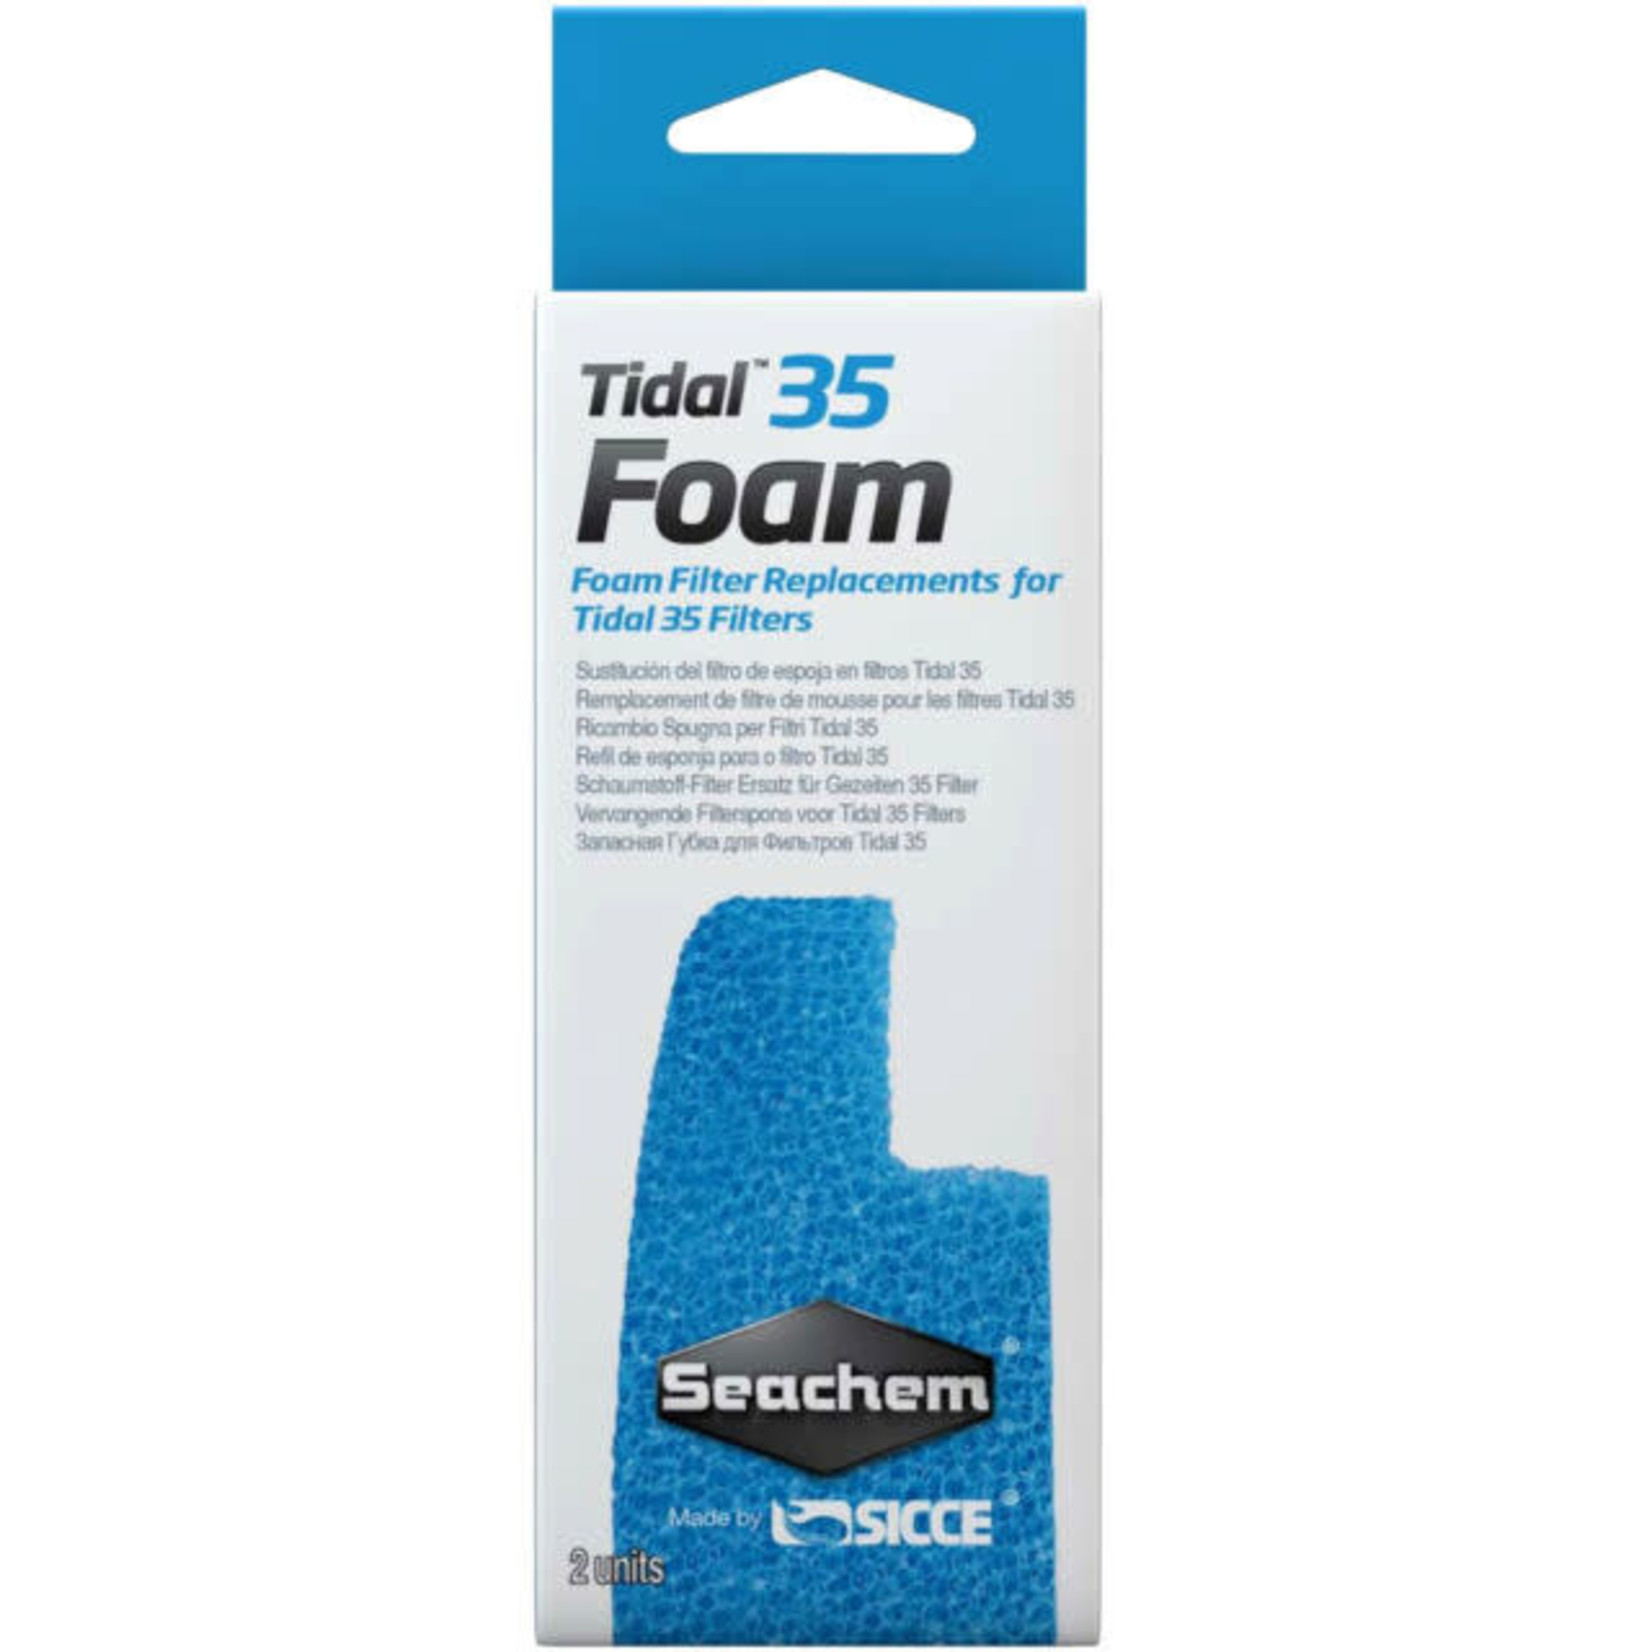 Seachem Seachem Tidal 35 Foam Filter Sponges for Tidal 35 External Filter - 2 pack